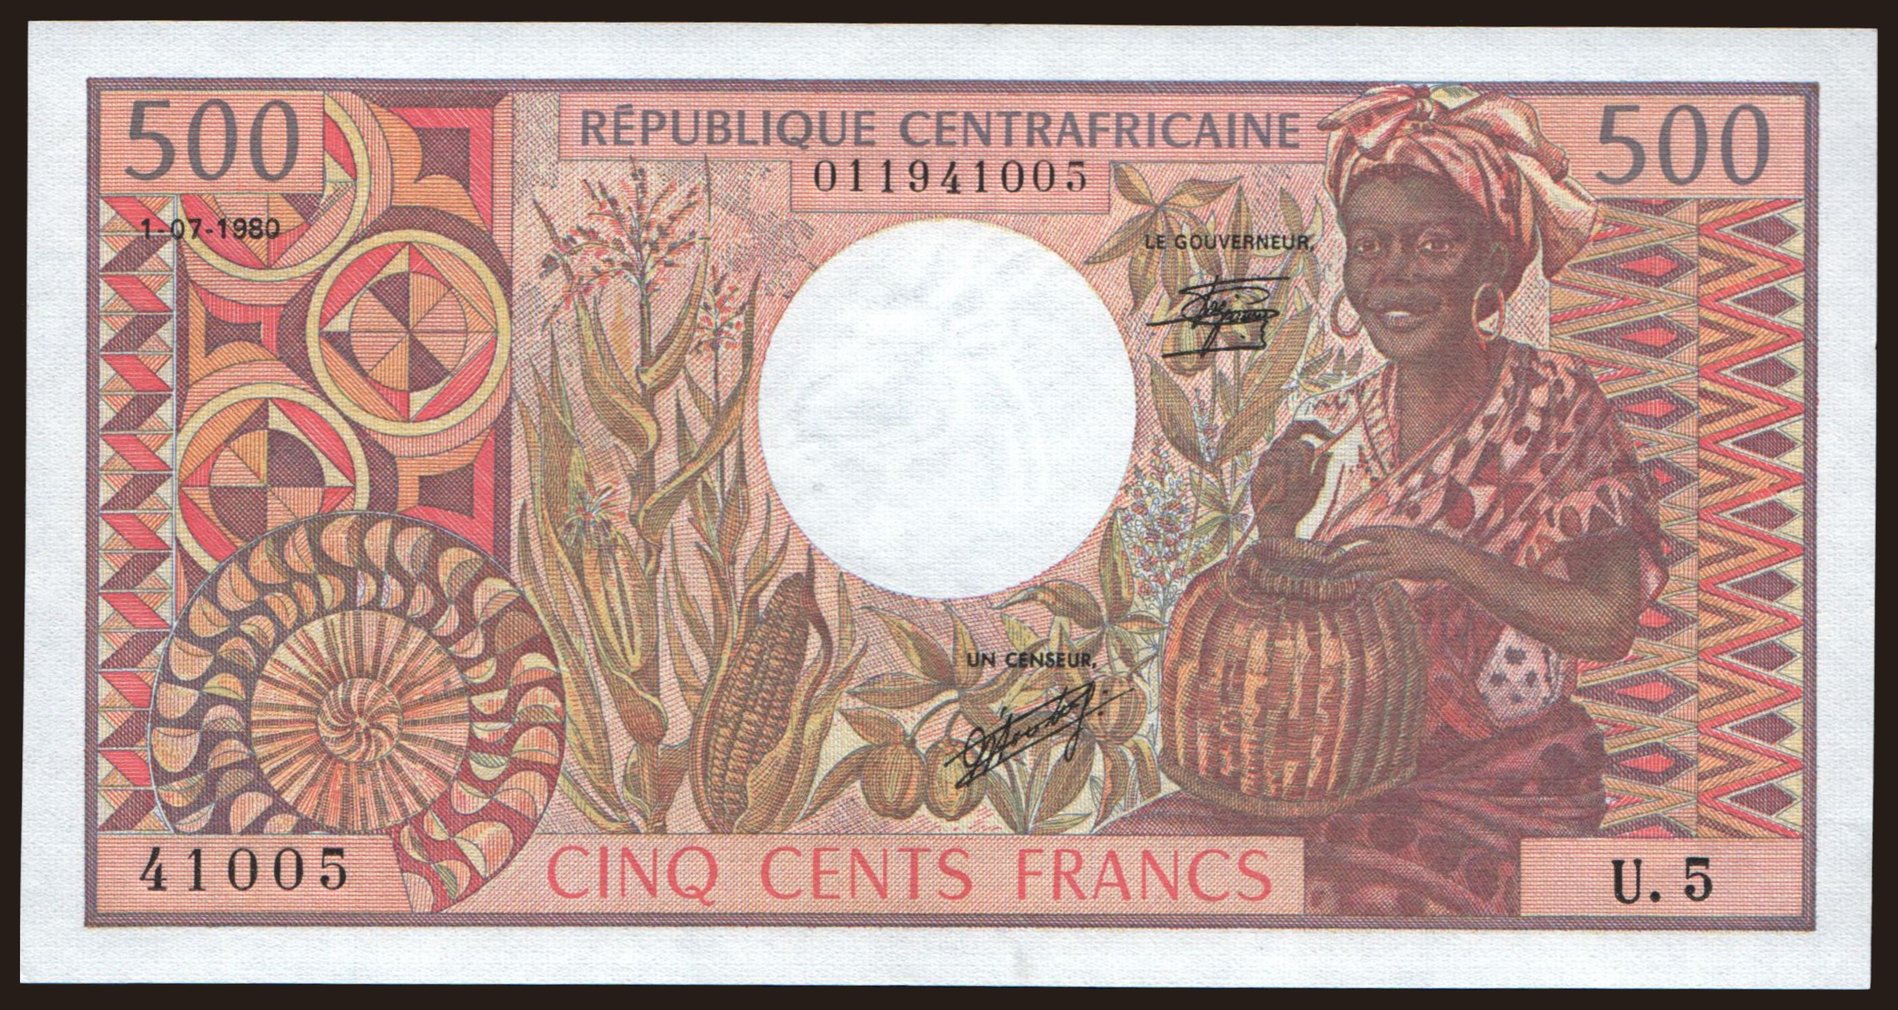 500 francs, 1980